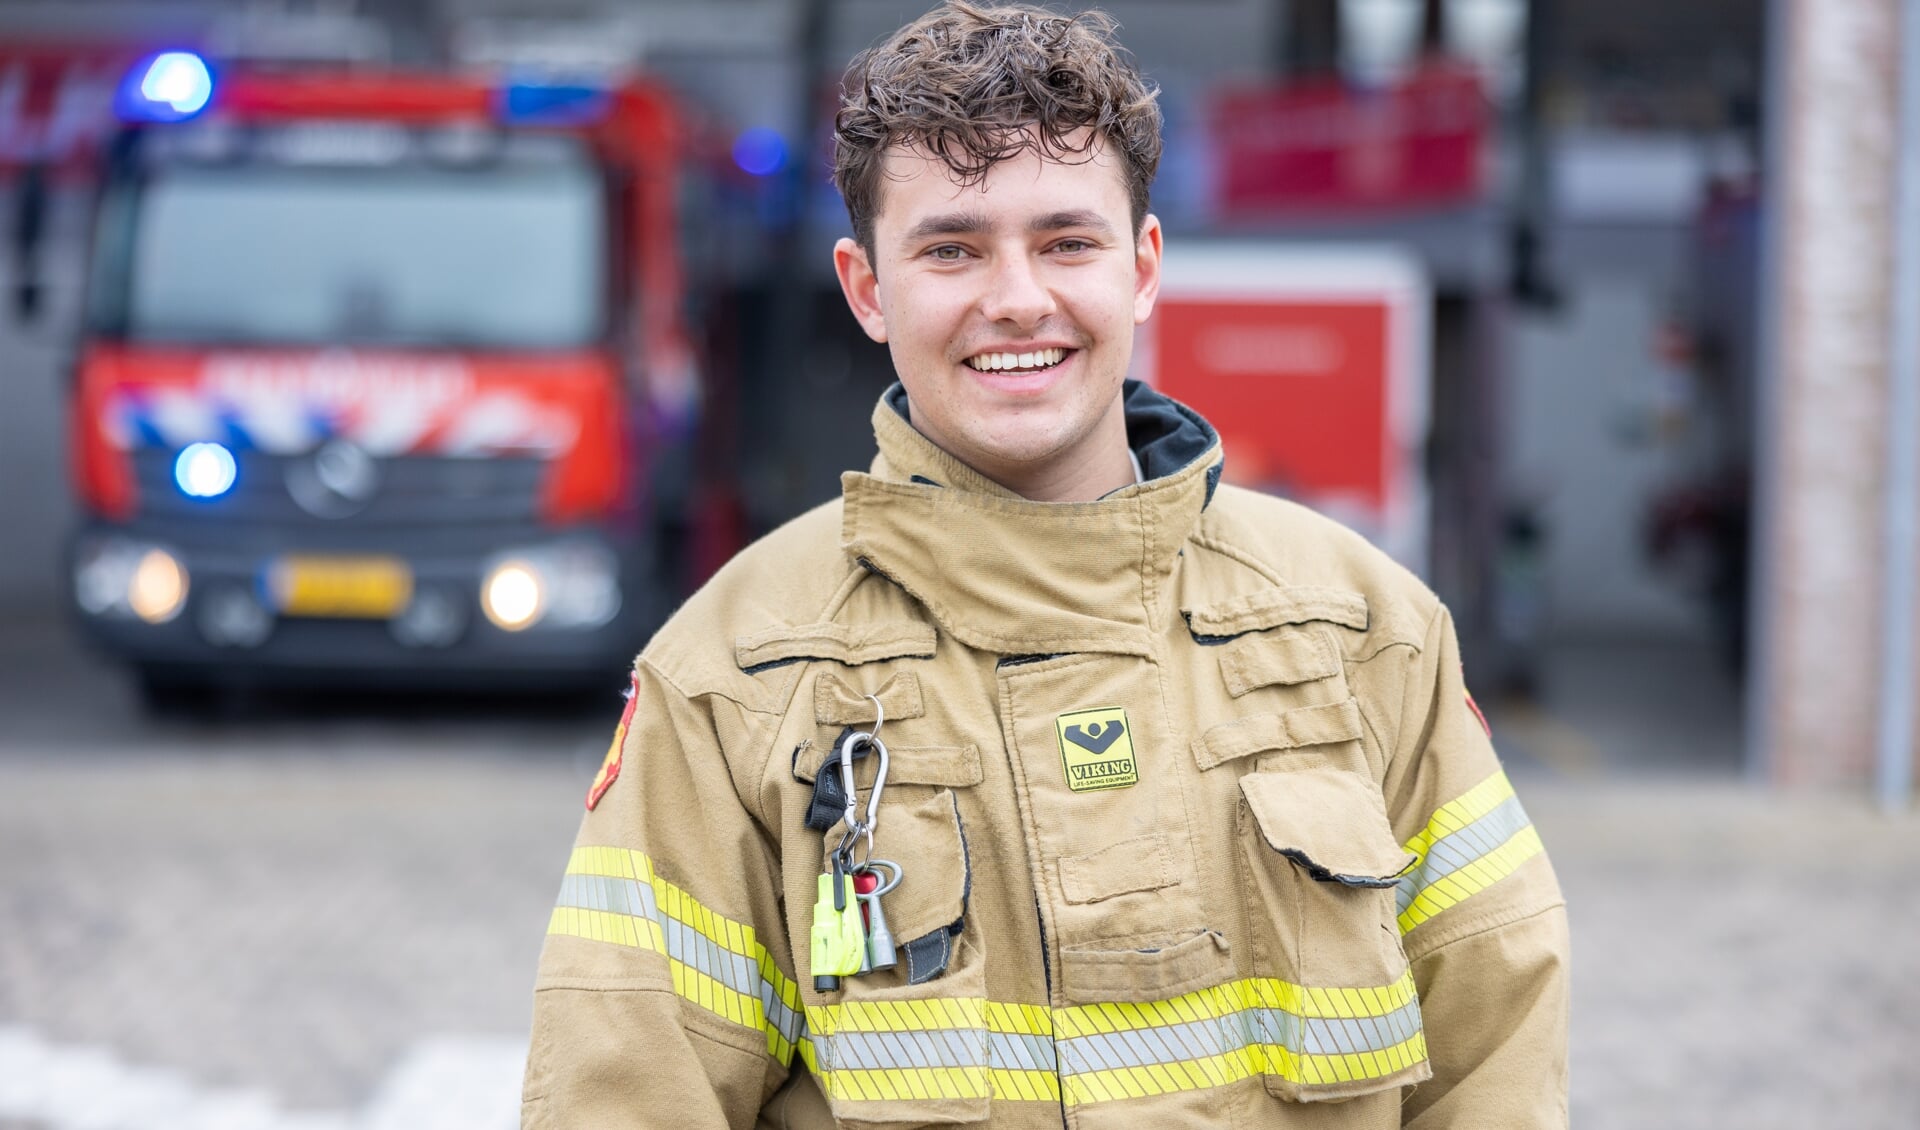 De 20-jarige Langedijker Gilian Treebusch geniet met volle teugen van zijn werk bij de brandweer.